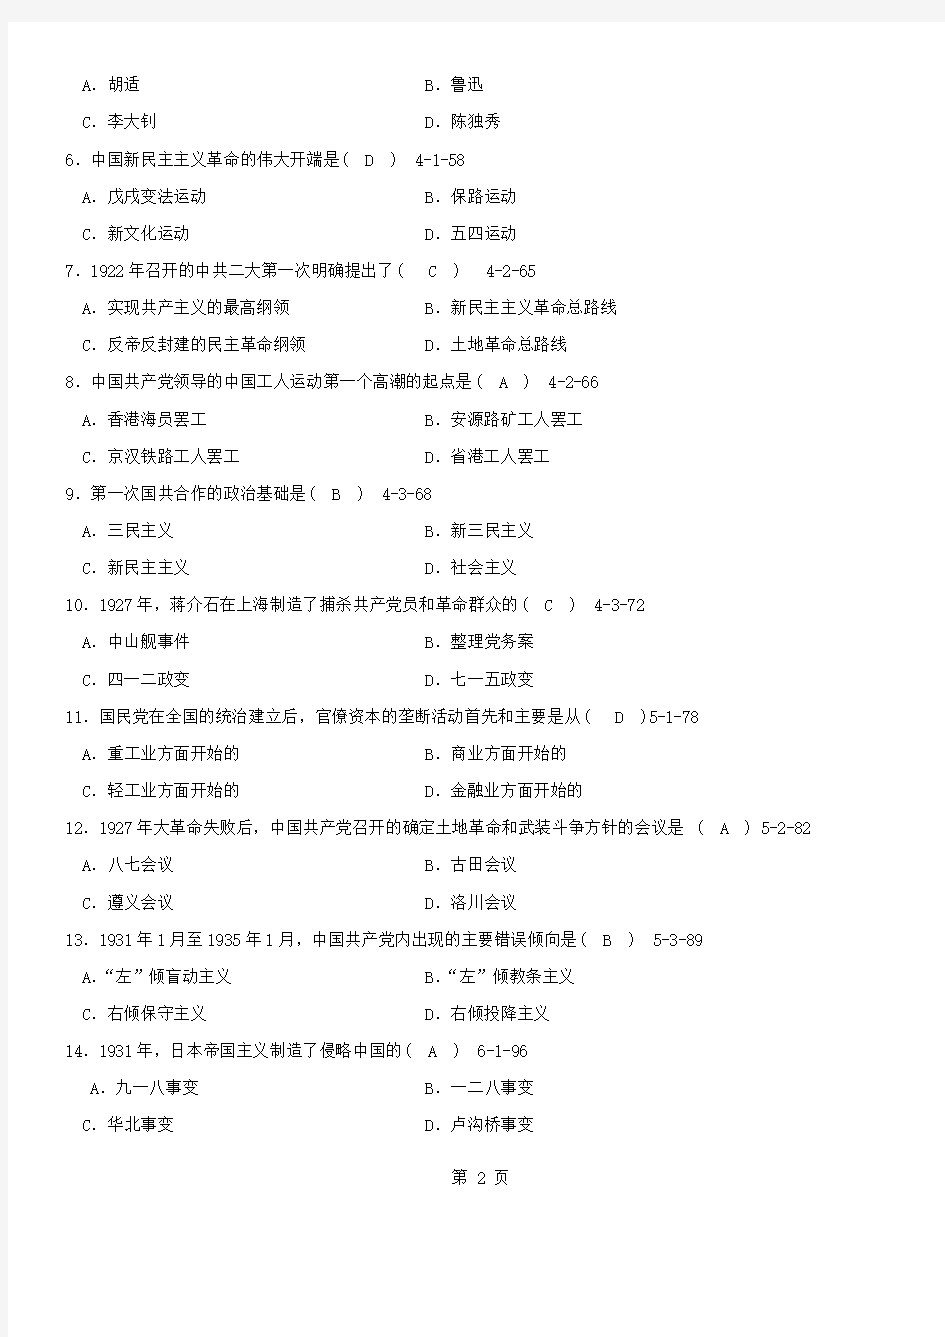 答案版2009年04月自学考试03708《中国近现代史纲要》历年真题及答案